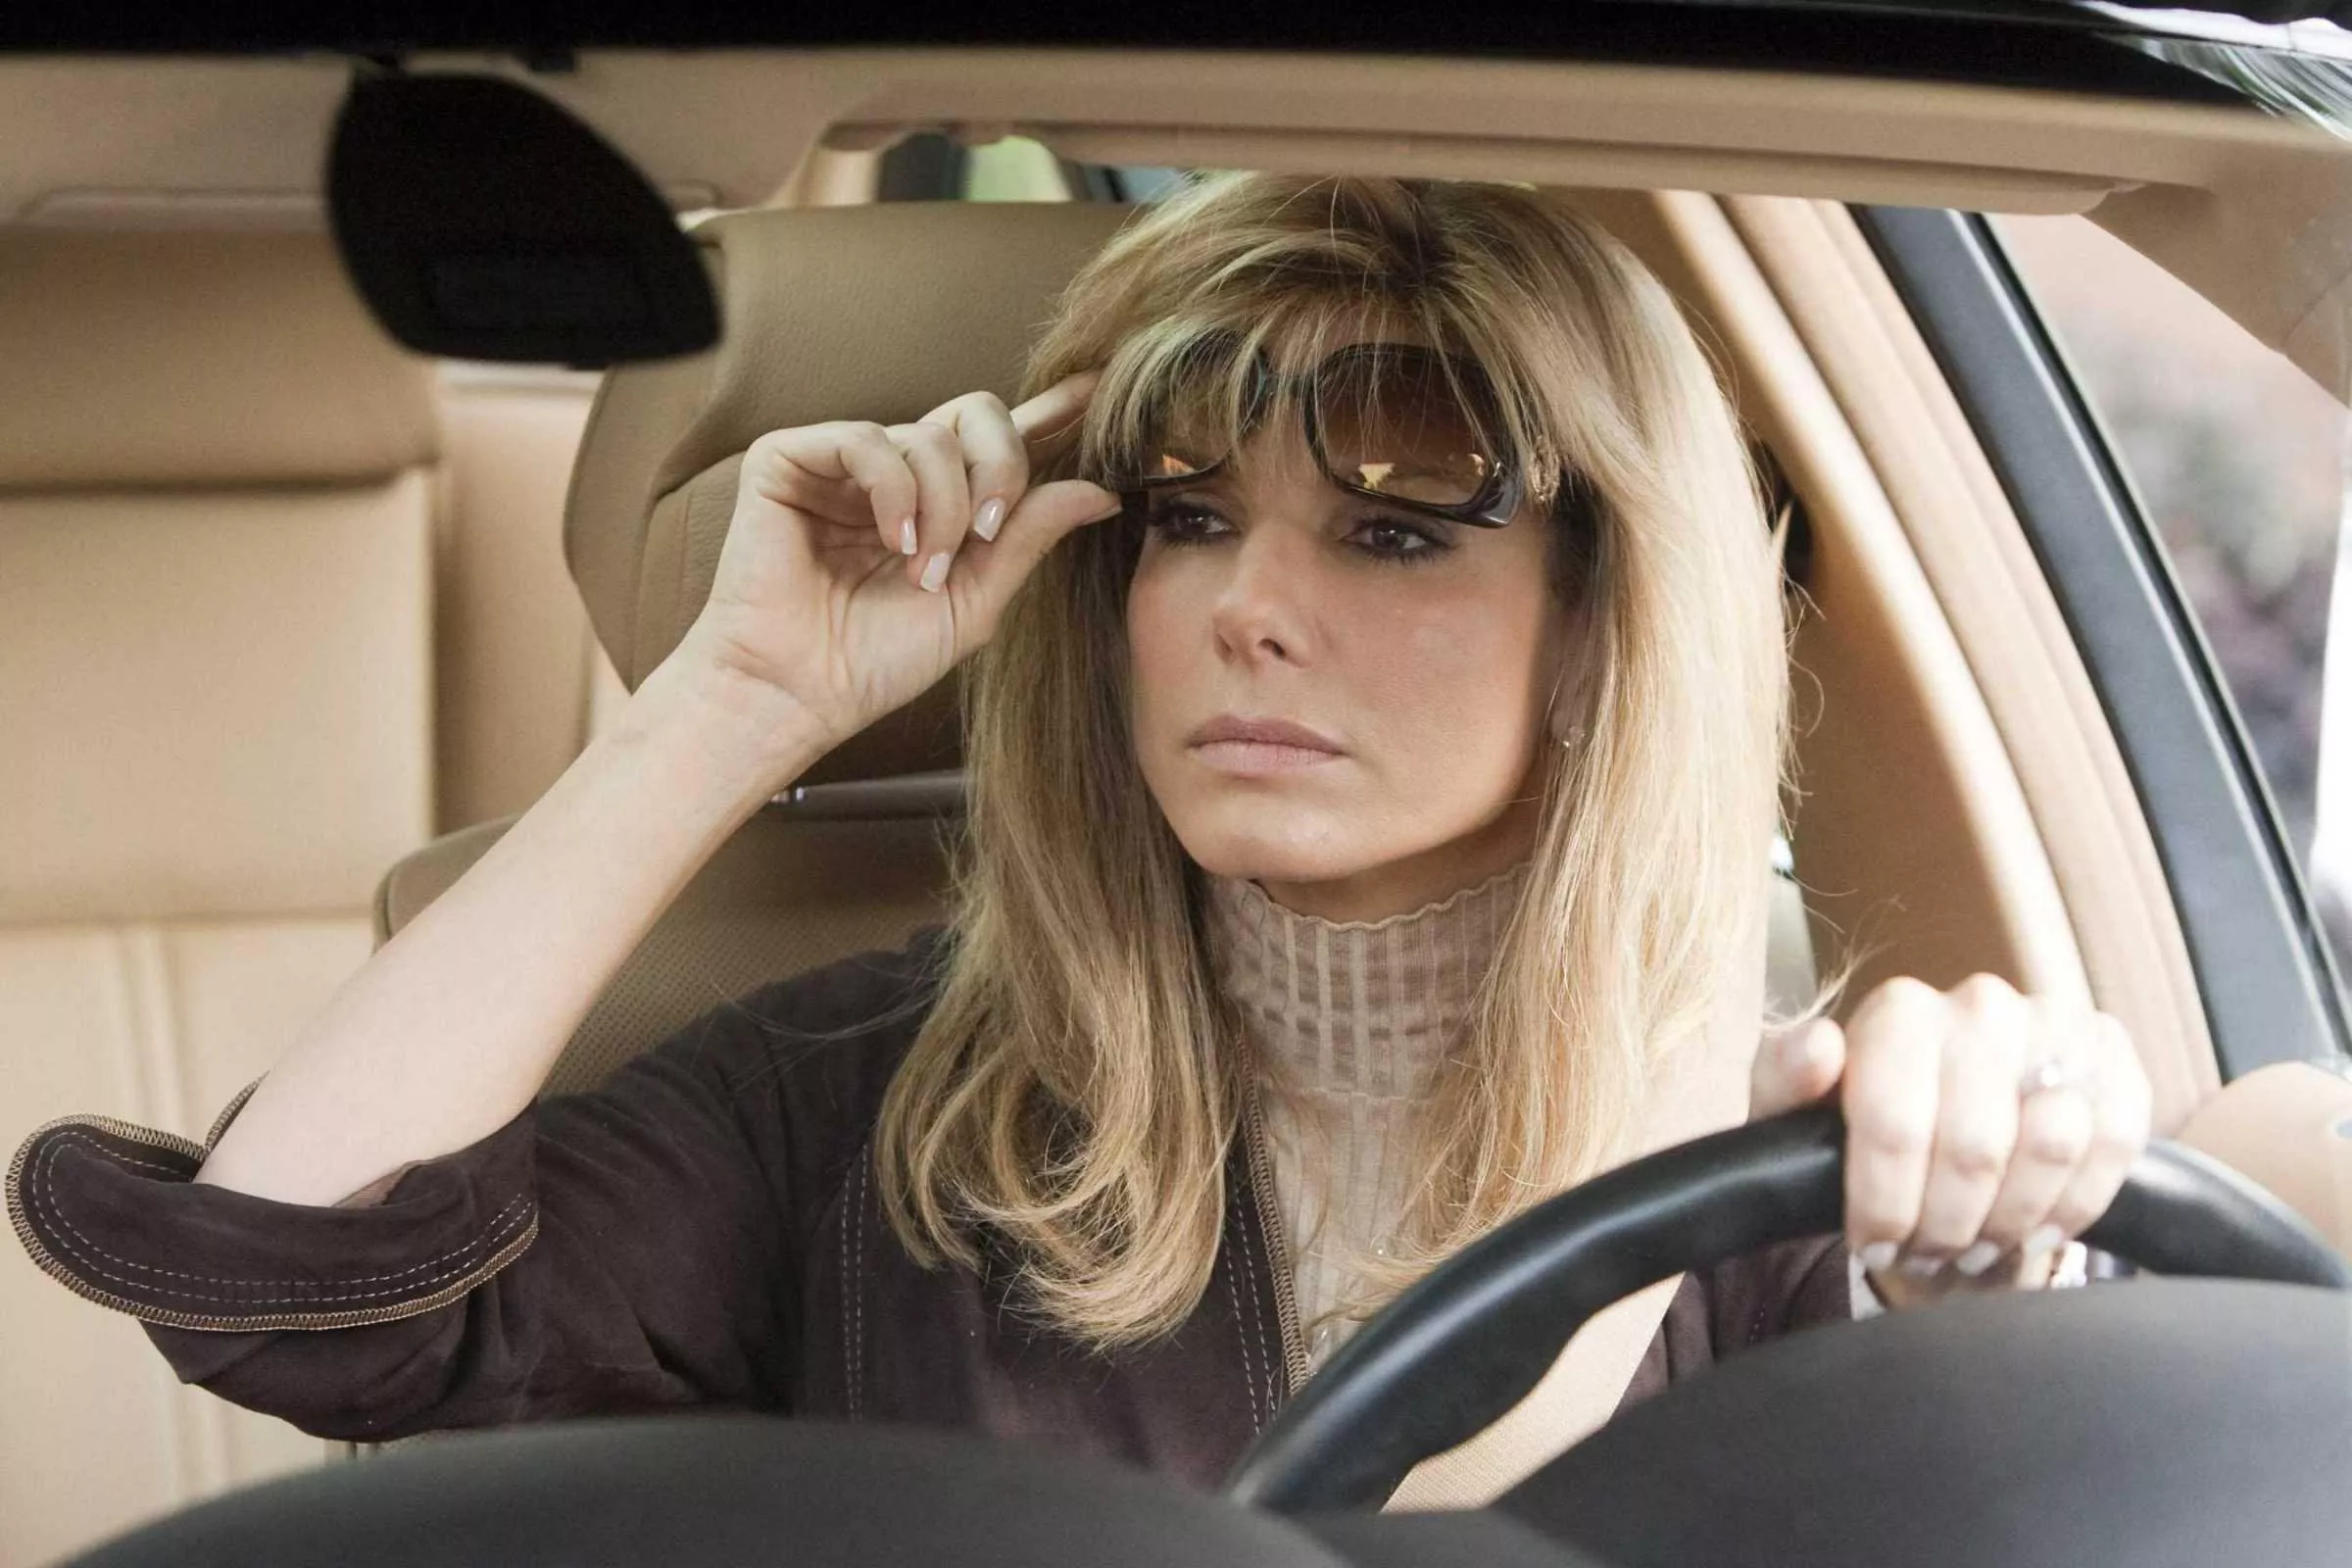 النساء يتفوّقن على الرجال في قيادة السيارة، بحسب الدراسات!